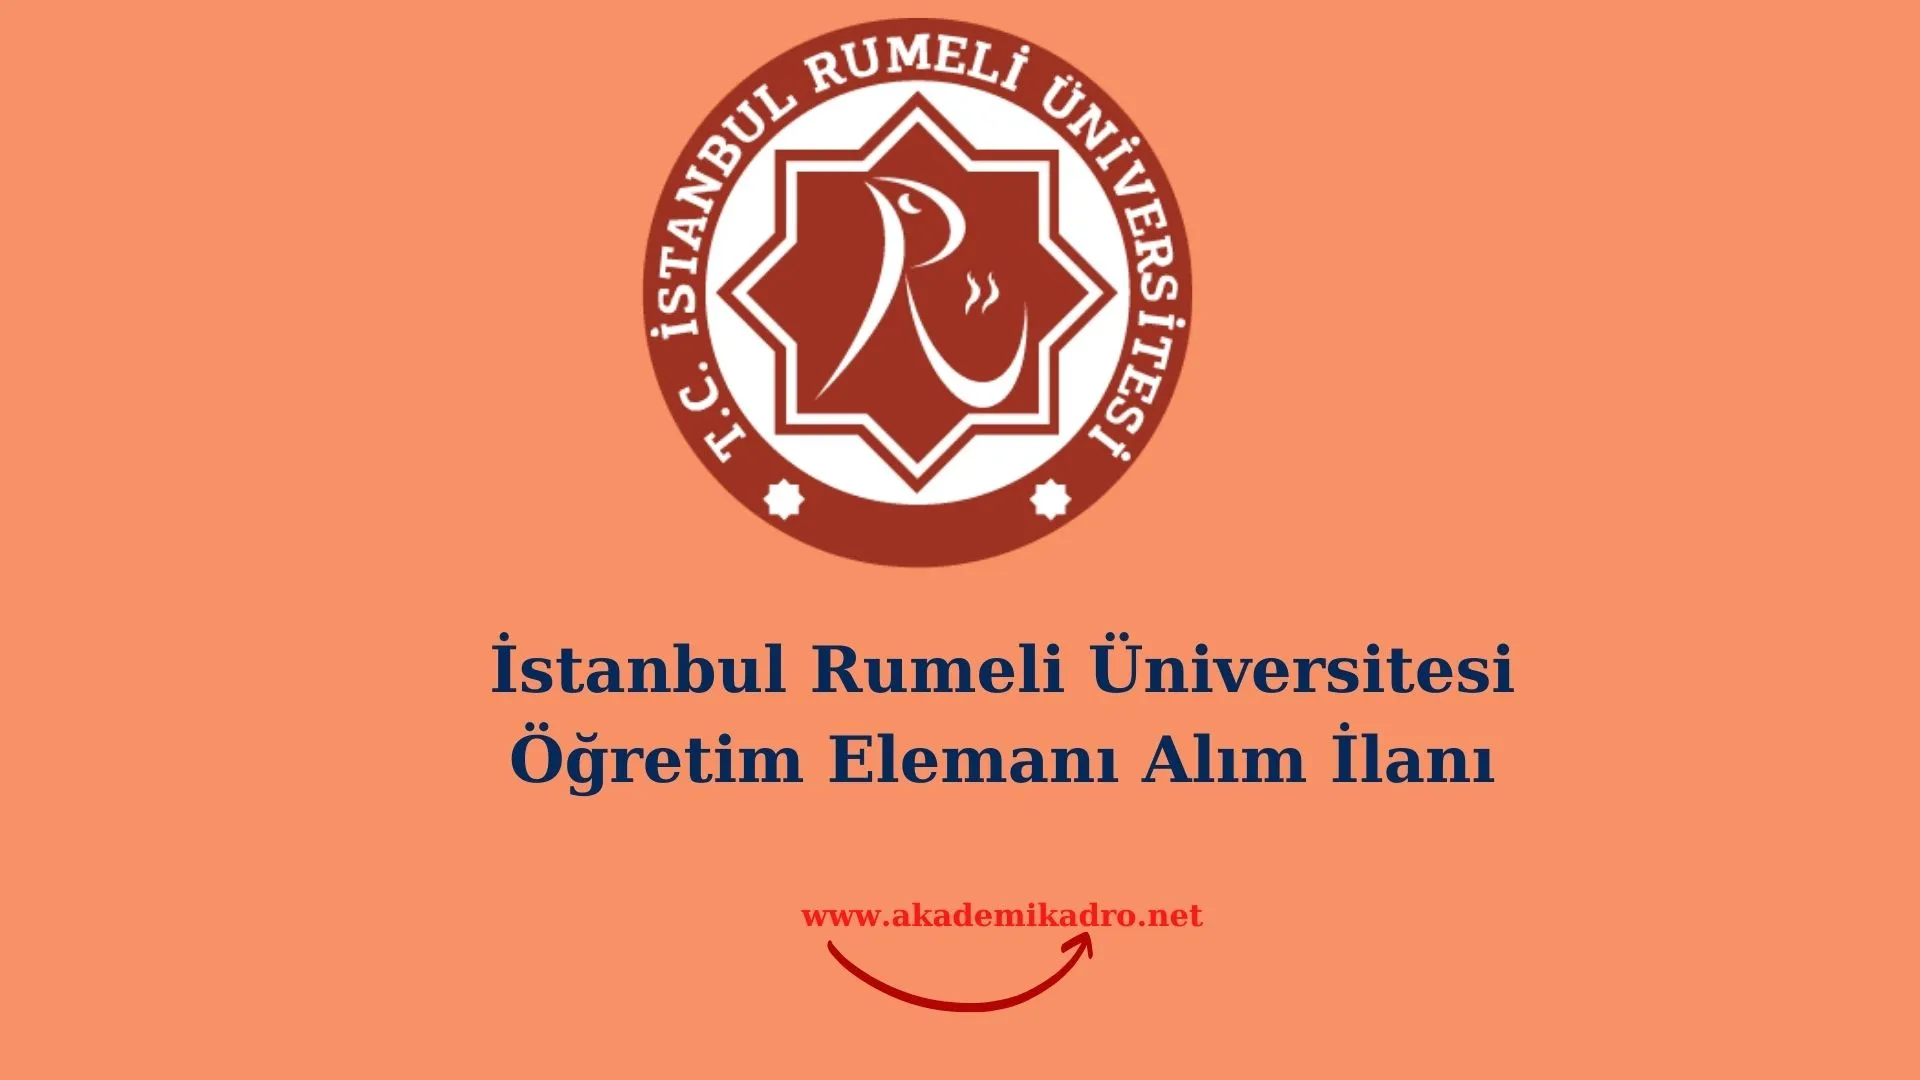 İstanbul Rumeli Üniversitesi 14 Öğretim üyesi, 3 Öğretim Görevlisi ve 3 Araştırma görevlisi alacaktır. Son başvuru tarihi 06 Aralık 2022